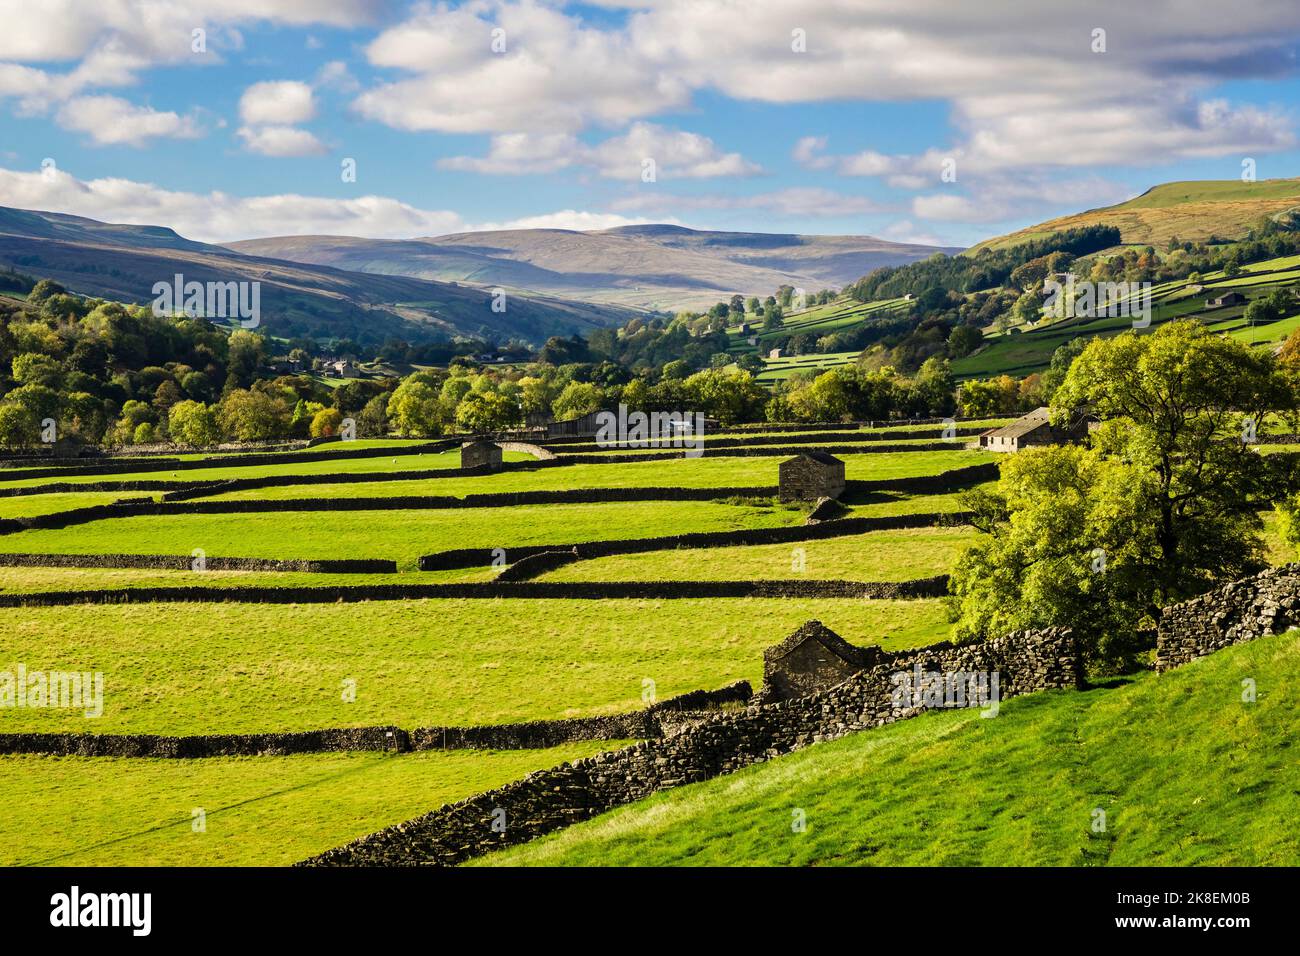 Paysage de campagne anglais ensoleillé avec des granges et des murs en pierre sèche dans le parc national de Yorkshire Dales. Gunnerside, Swaledale, North Yorkshire, Angleterre, Royaume-Uni Banque D'Images